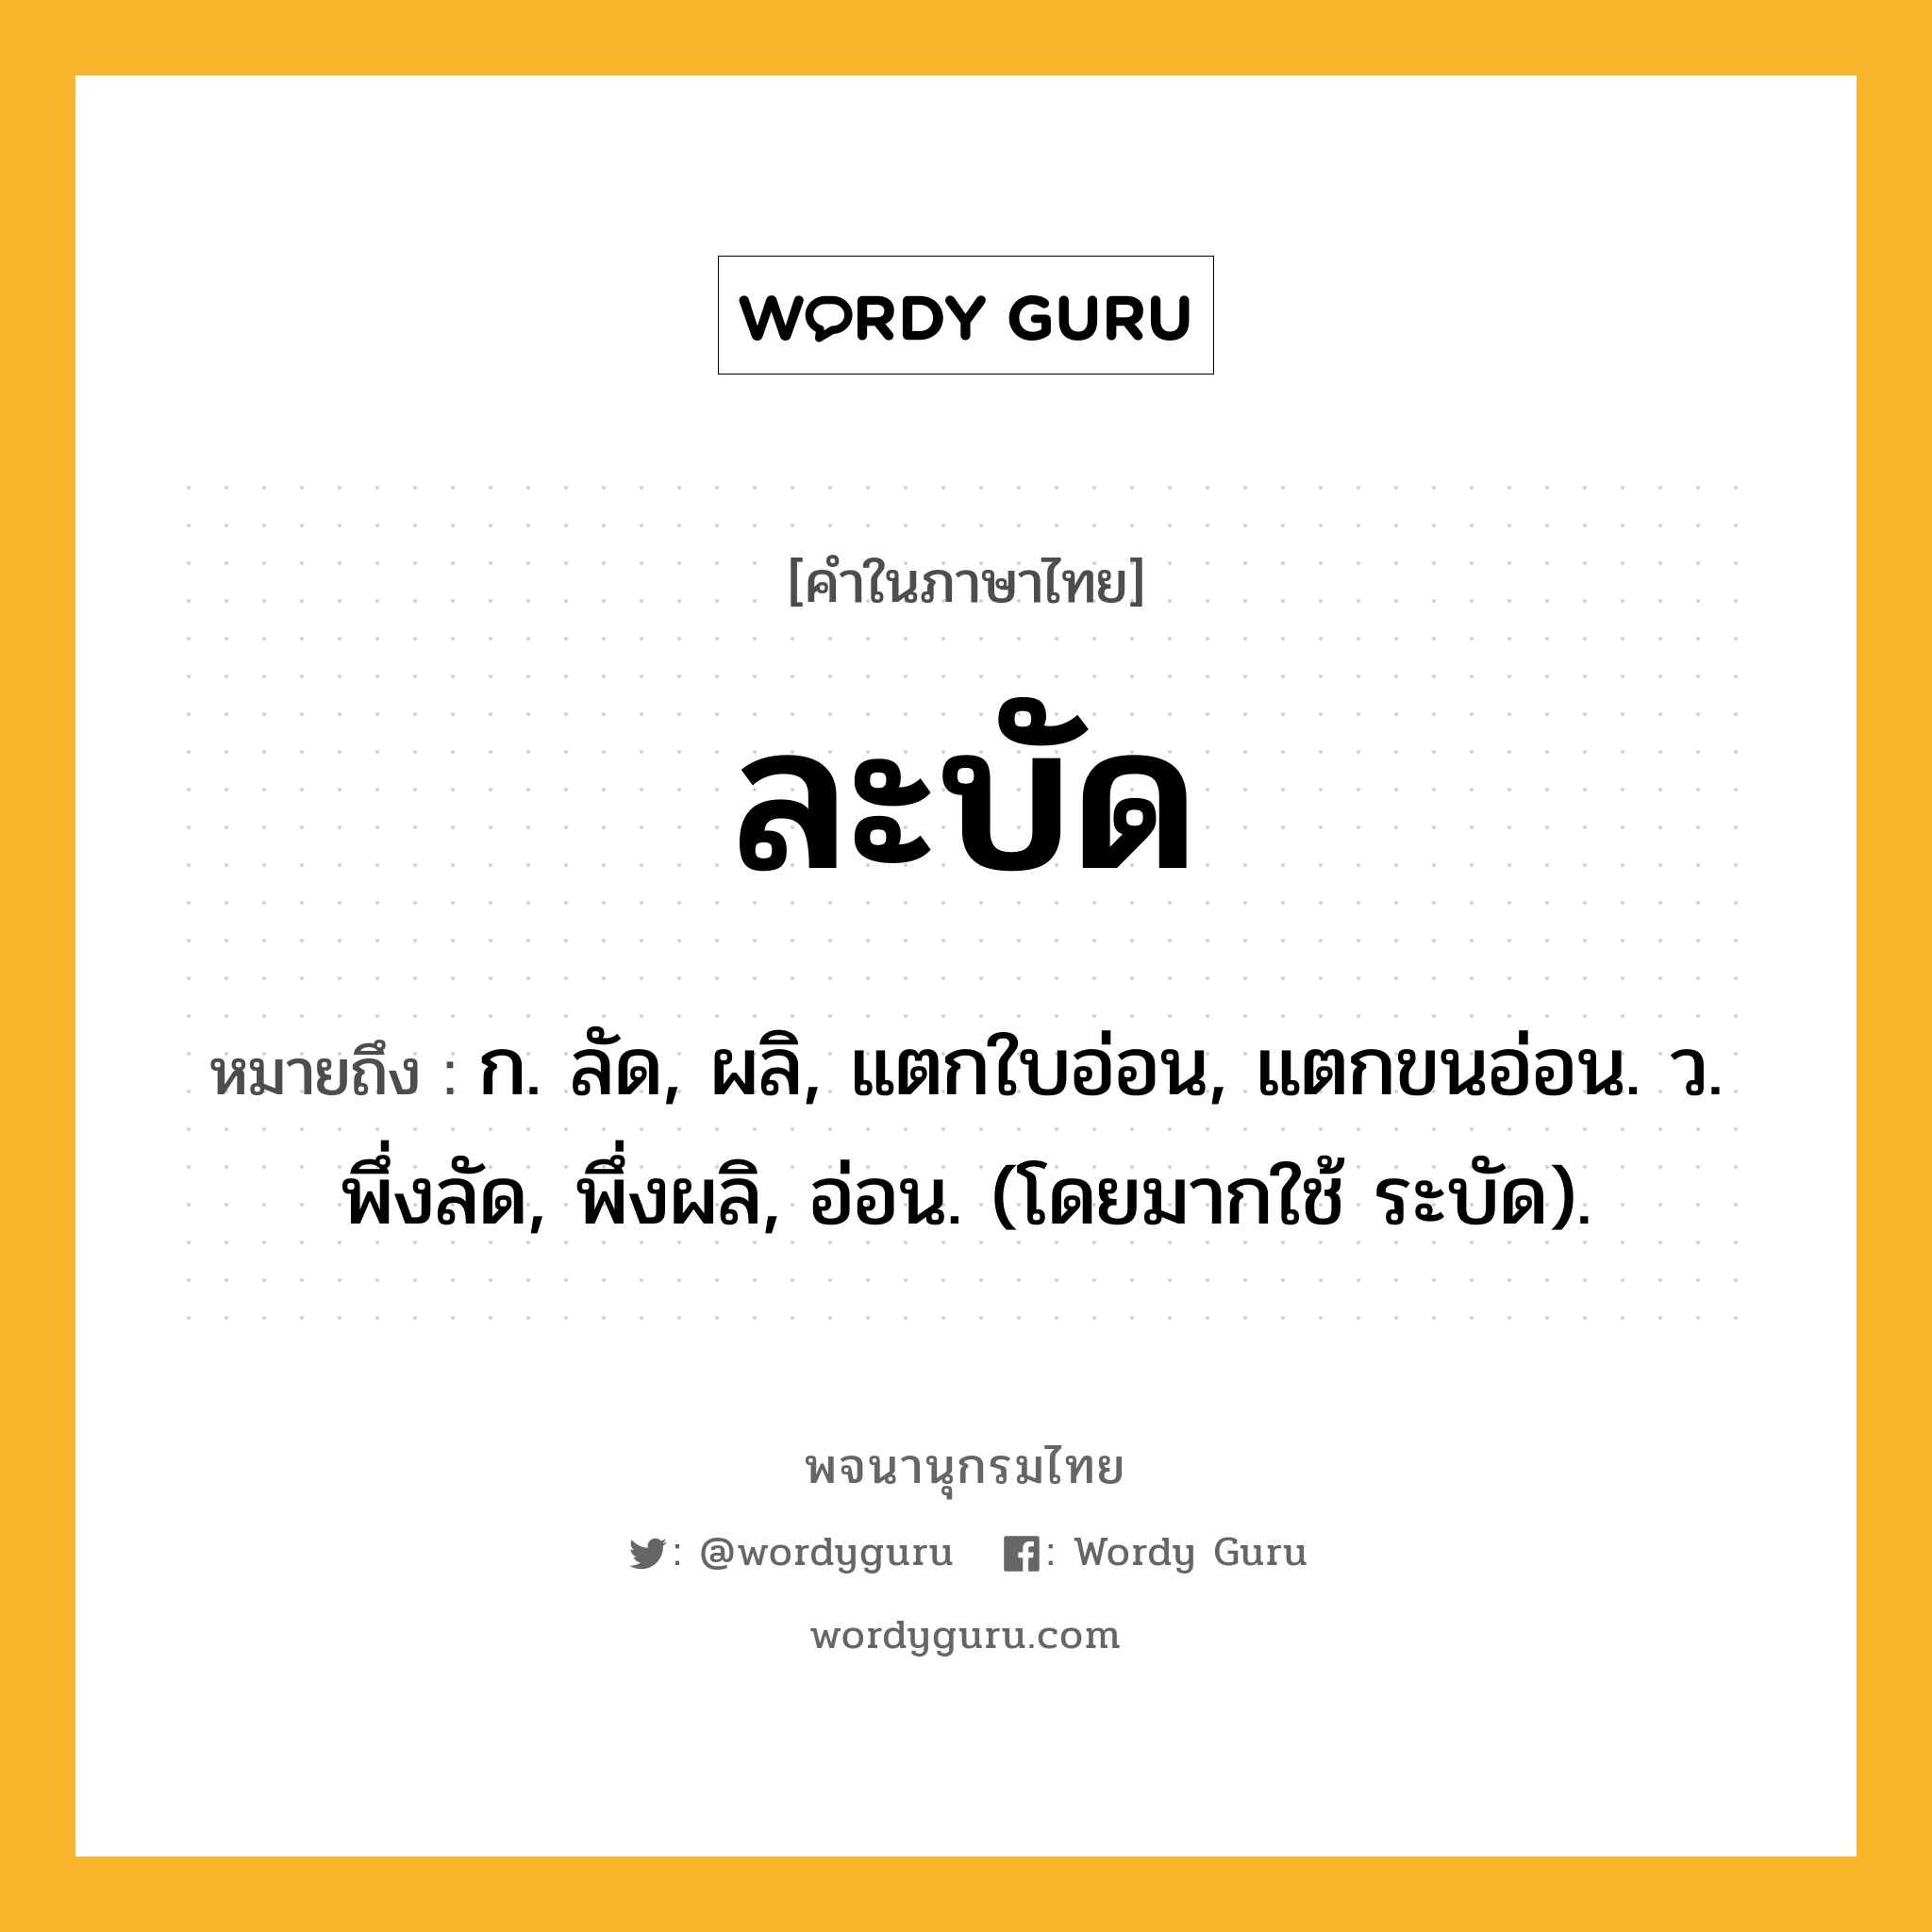 ละบัด หมายถึงอะไร?, คำในภาษาไทย ละบัด หมายถึง ก. ลัด, ผลิ, แตกใบอ่อน, แตกขนอ่อน. ว. พึ่งลัด, พึ่งผลิ, อ่อน. (โดยมากใช้ ระบัด).